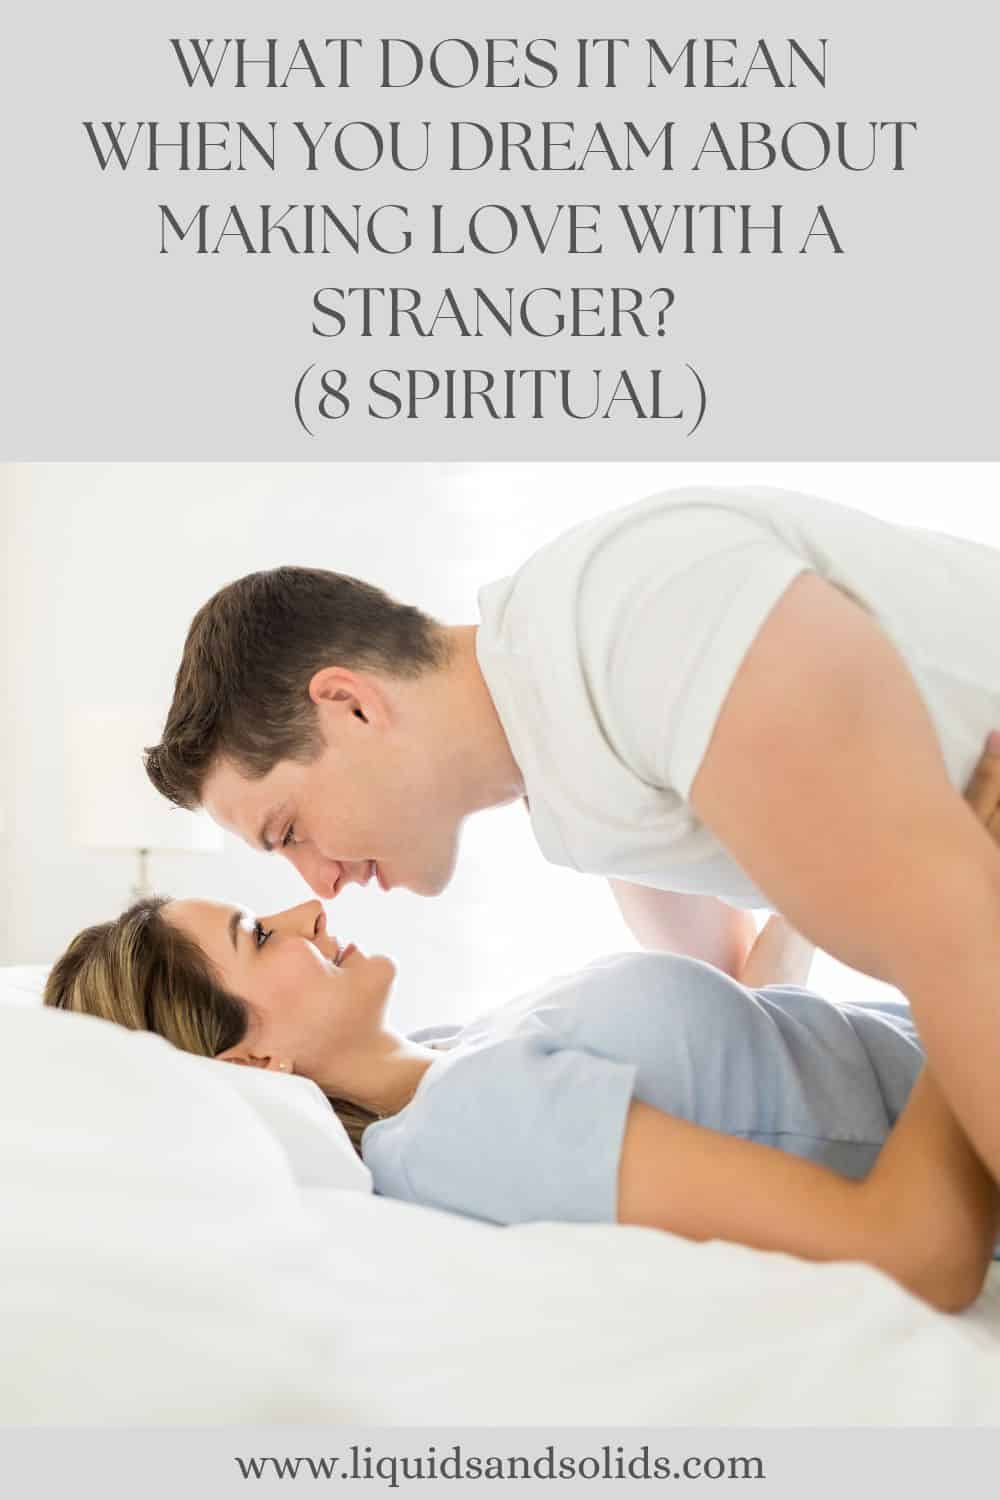  هل تحلم بممارسة الحب مع شخص غريب؟ (8 معاني روحية)